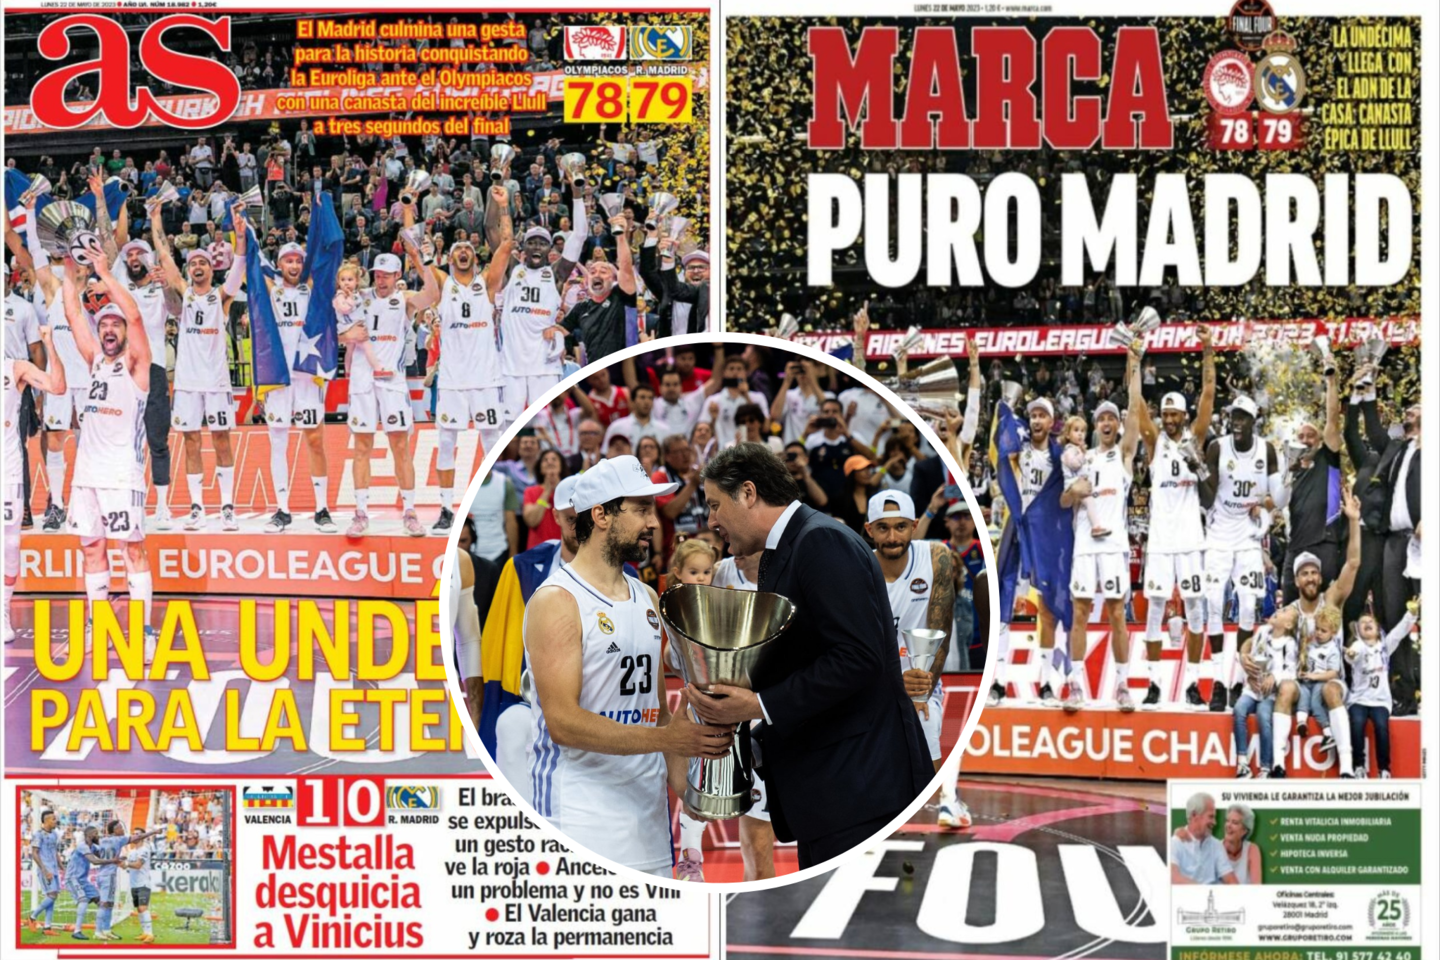  Ispanijos spauda ir aikčiojo, ir verkė dėl patirto stebuklo: „Real“ yra begalinis čempionas“.<br> Lrytas.lt nuotr.